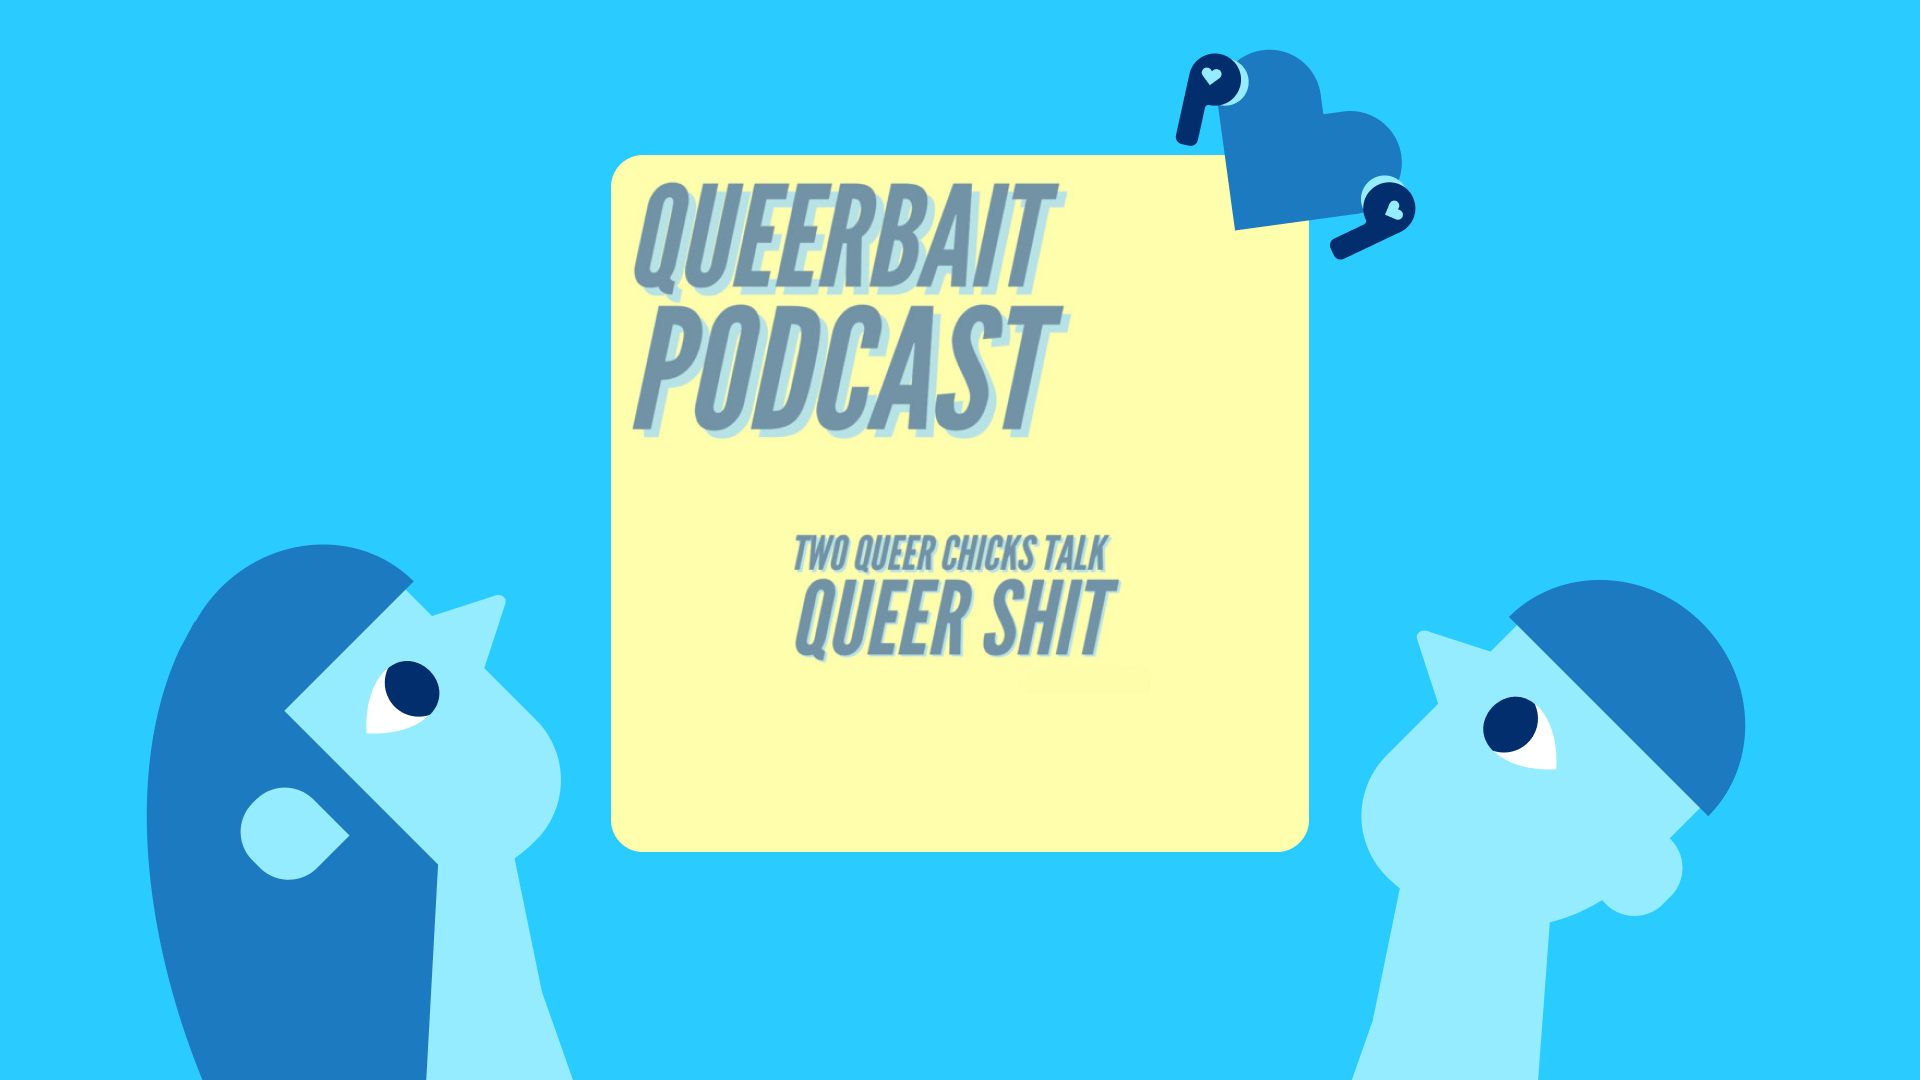 Queerbait podcast